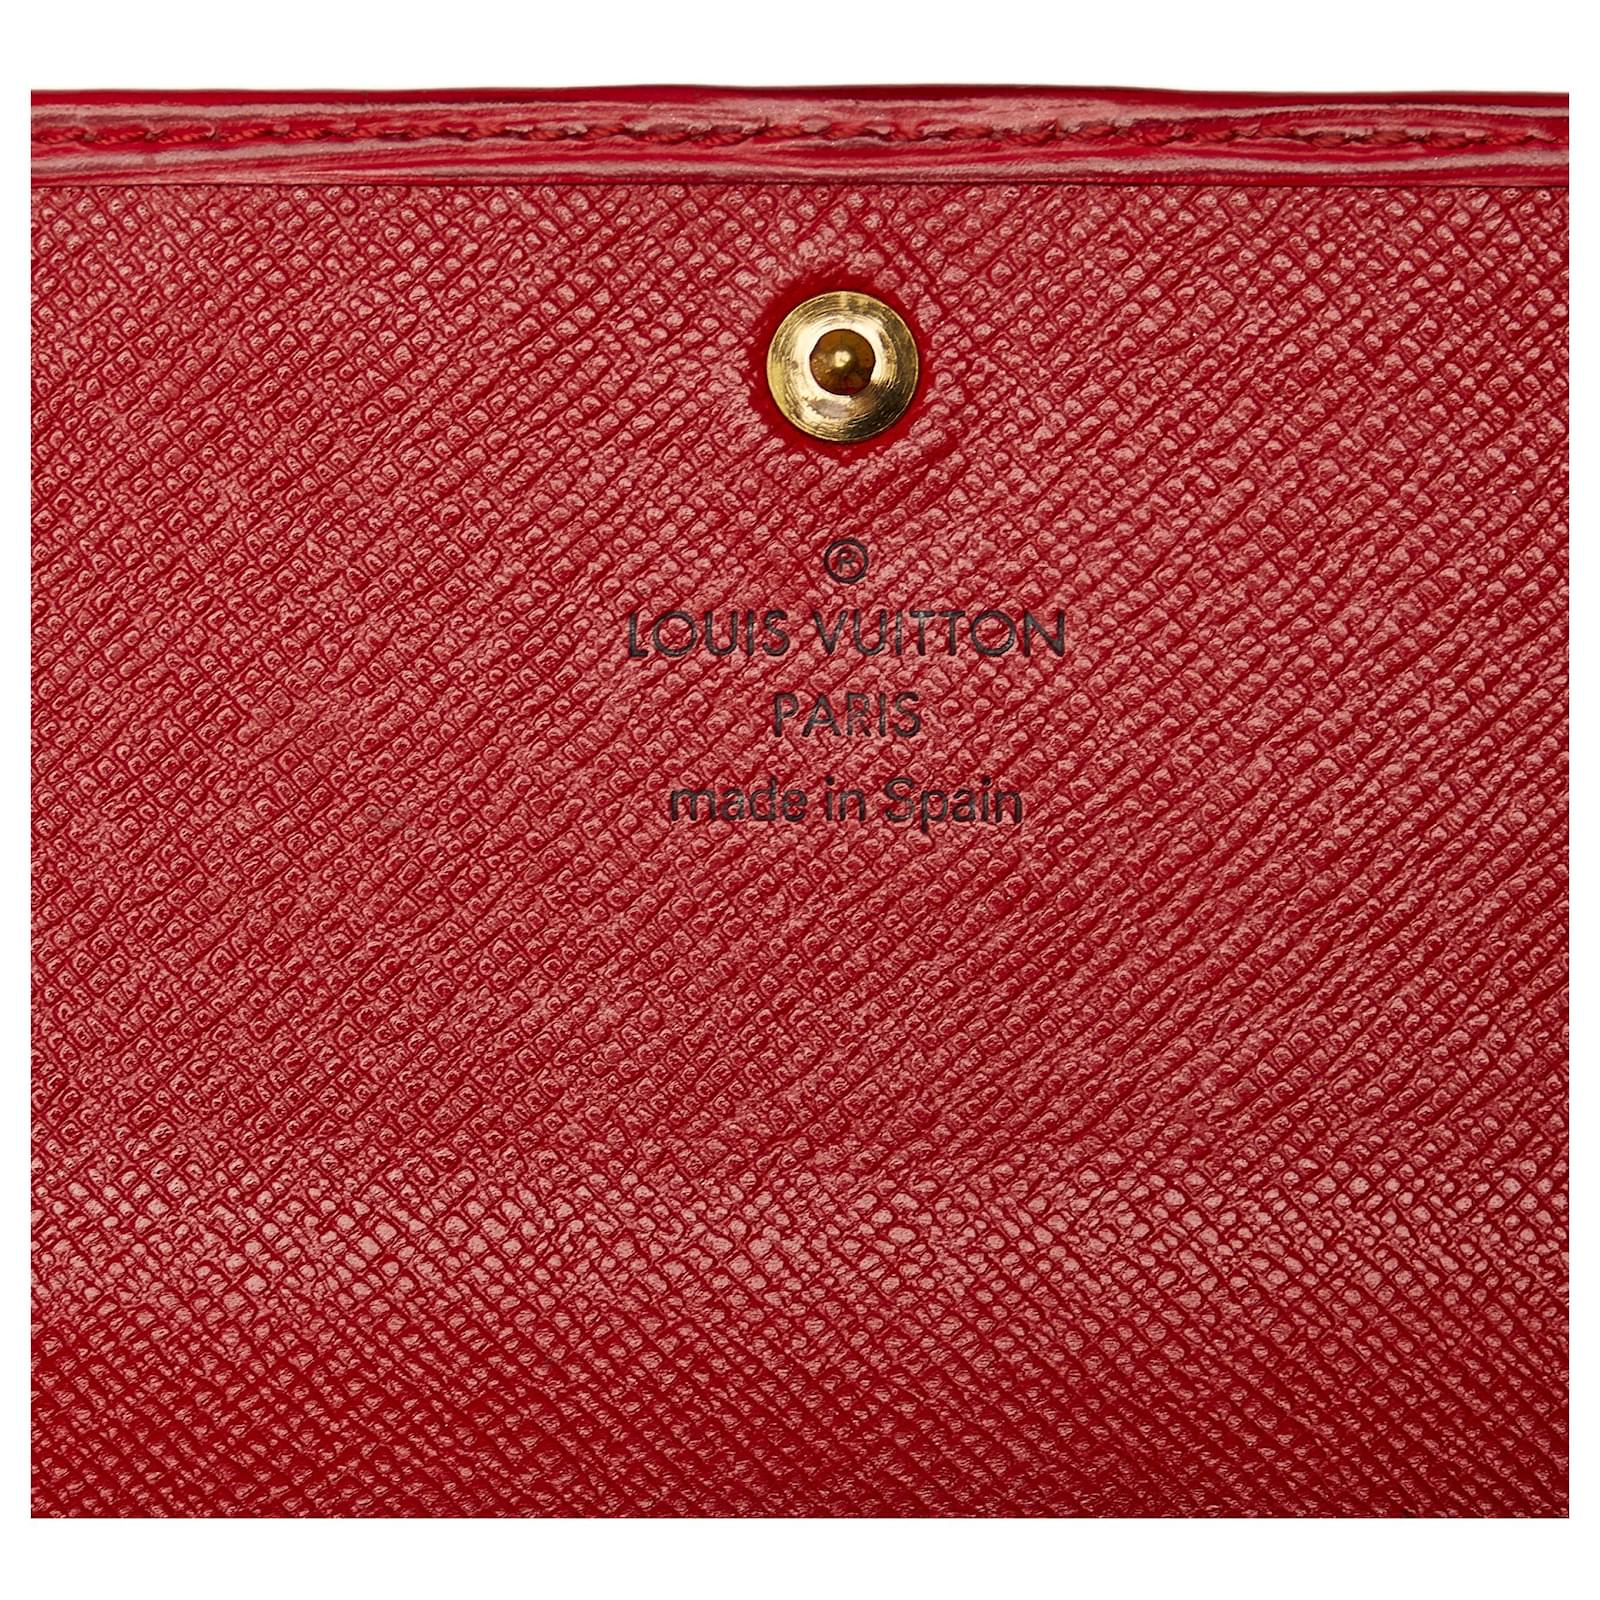 Louis Vuitton Portefeuille Sarah Sarah Wallet 2020-21FW, Red